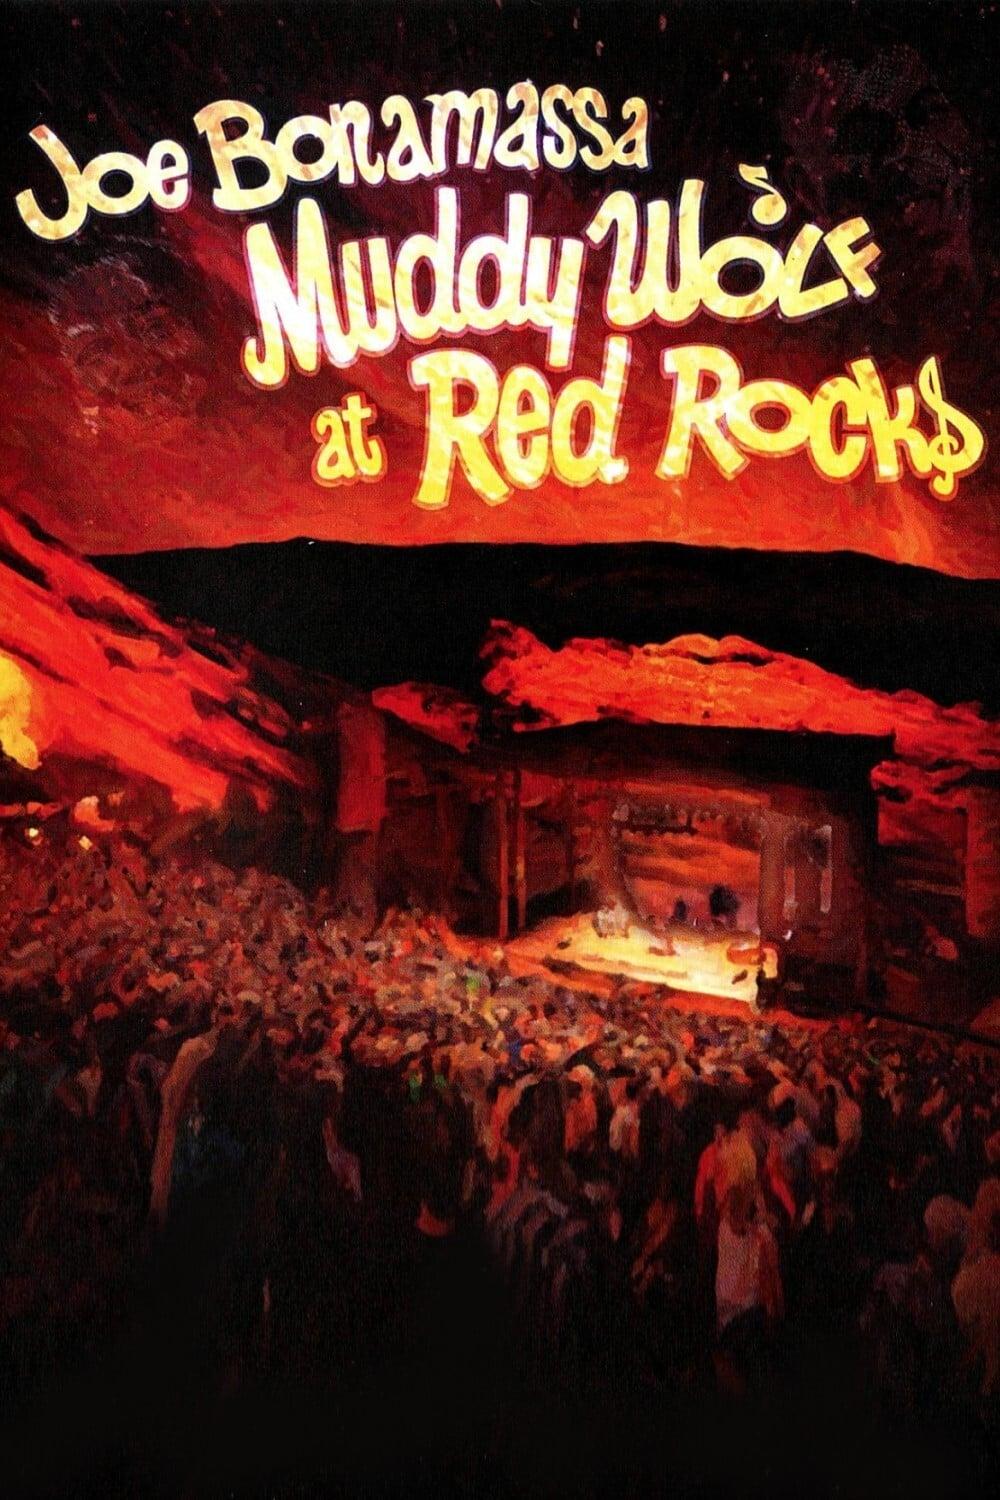 Joe Bonamassa - Muddy Wolf at Red Rocks poster